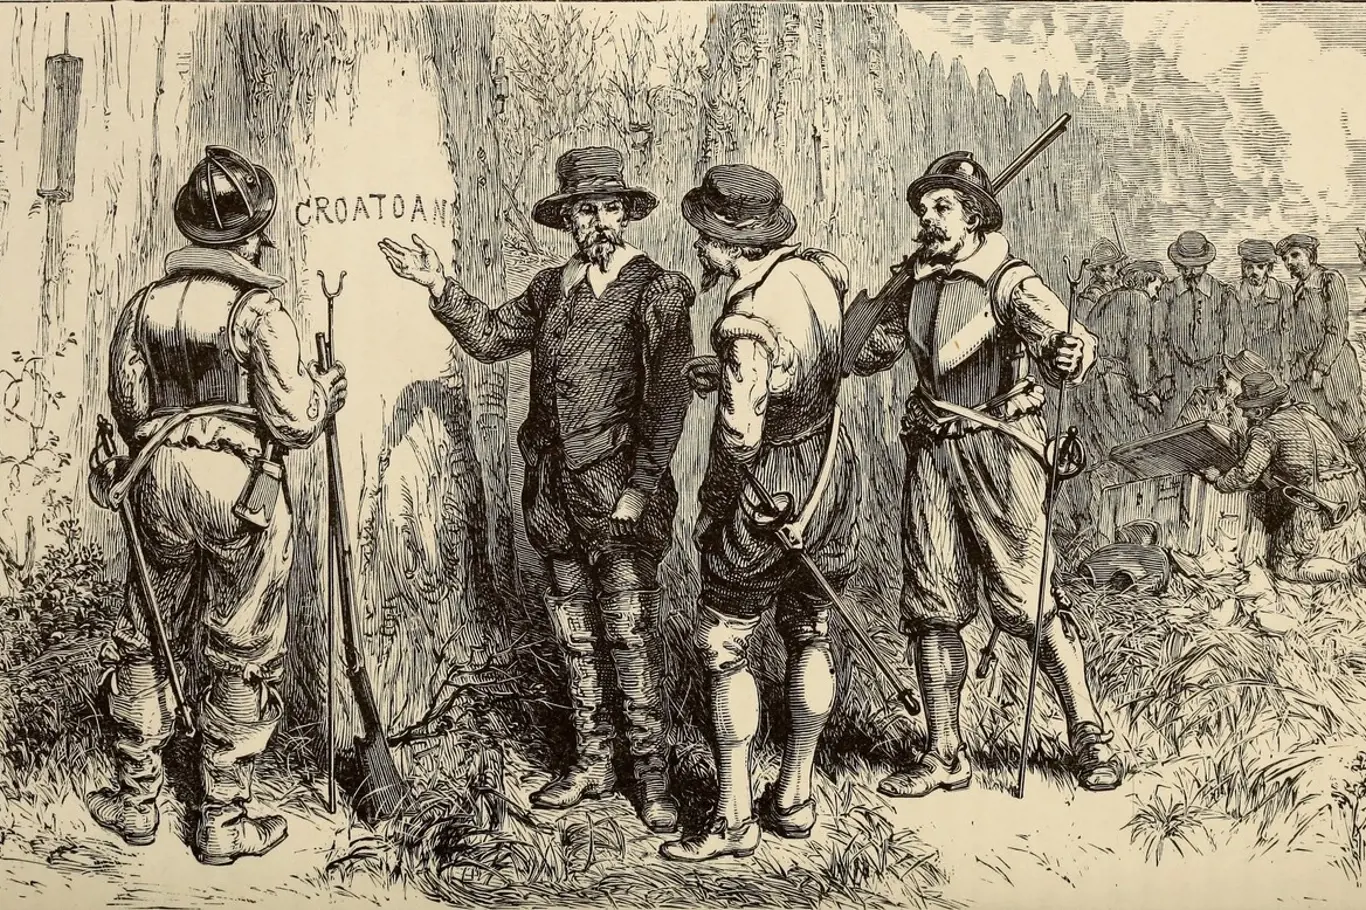 Co se stalo se ztracenou kolonií na ostrově Roanoke